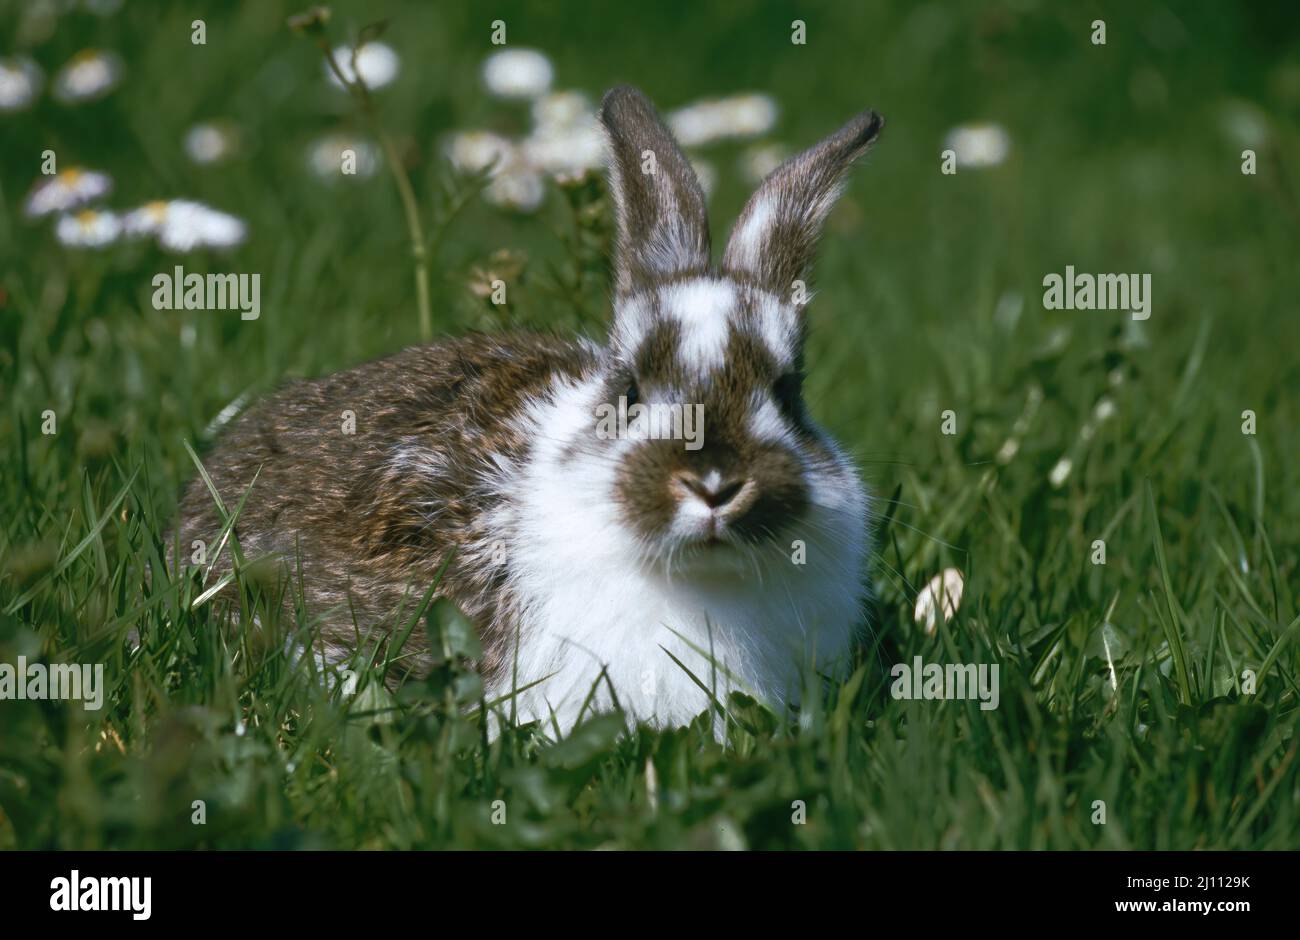 Hase, junger Hase auf einer Frühlingswiese, Häschen Stock Photo